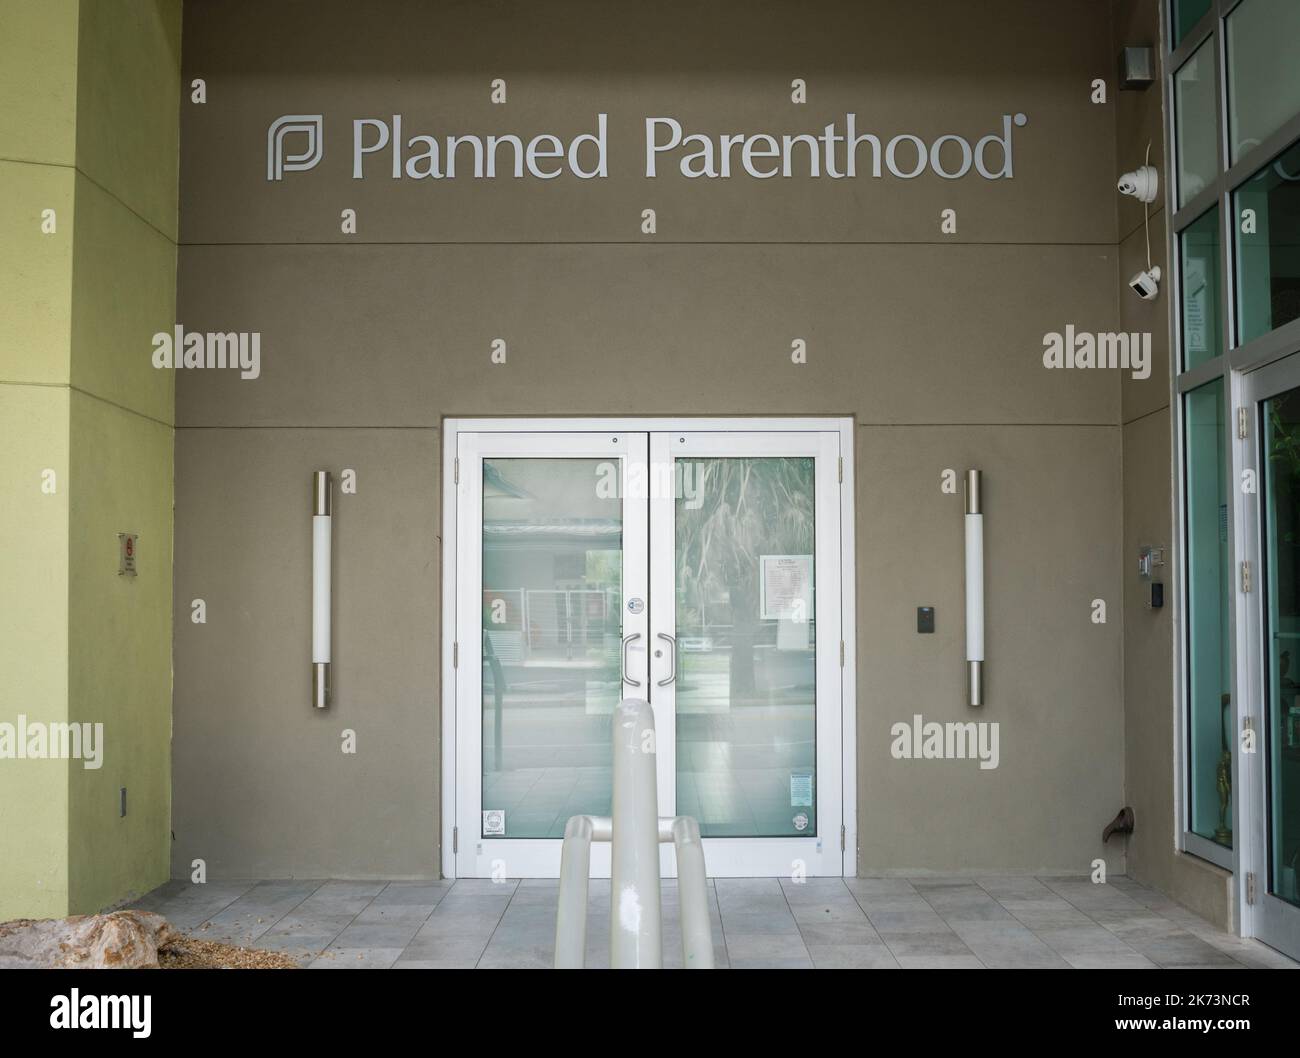 25. September 2022: Vor der geplanten Parenthood Clinic, einer Non-Profit-Organisation, die reproduktive Gesundheitsdienste anbietet. Stockfoto